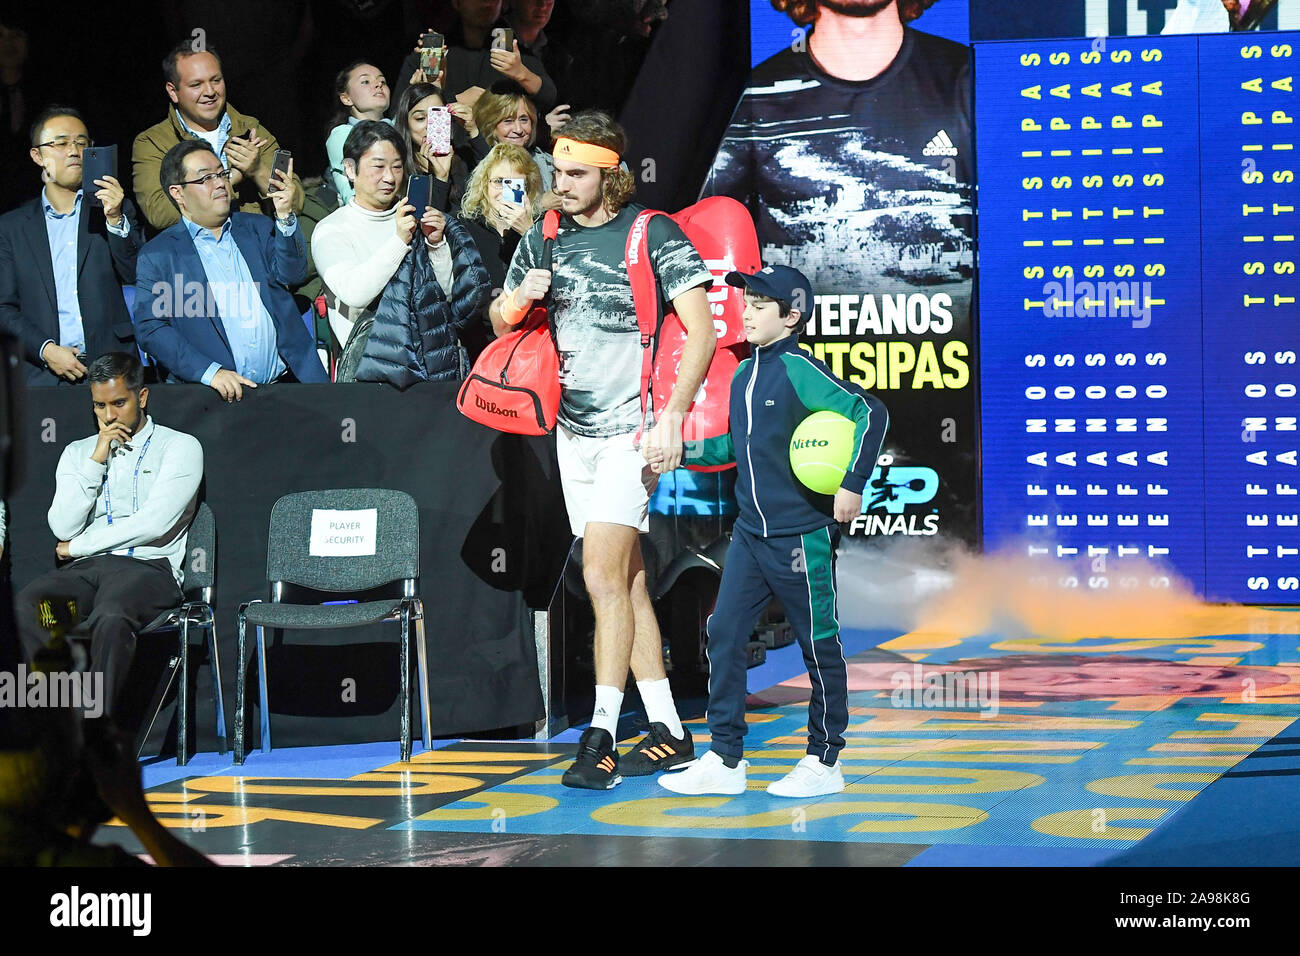 Londres, Royaume-Uni, 13 Nov 2019, stefanos tsitsipas ,le gre, lors de l'ATP Nitto STEFANOS TSITSIPAS Final Vs ALEXANDER ZVEREV - Internationaux de Tennis - Crédit : LPS/Roberto Zanettin/Alamy Live News Banque D'Images